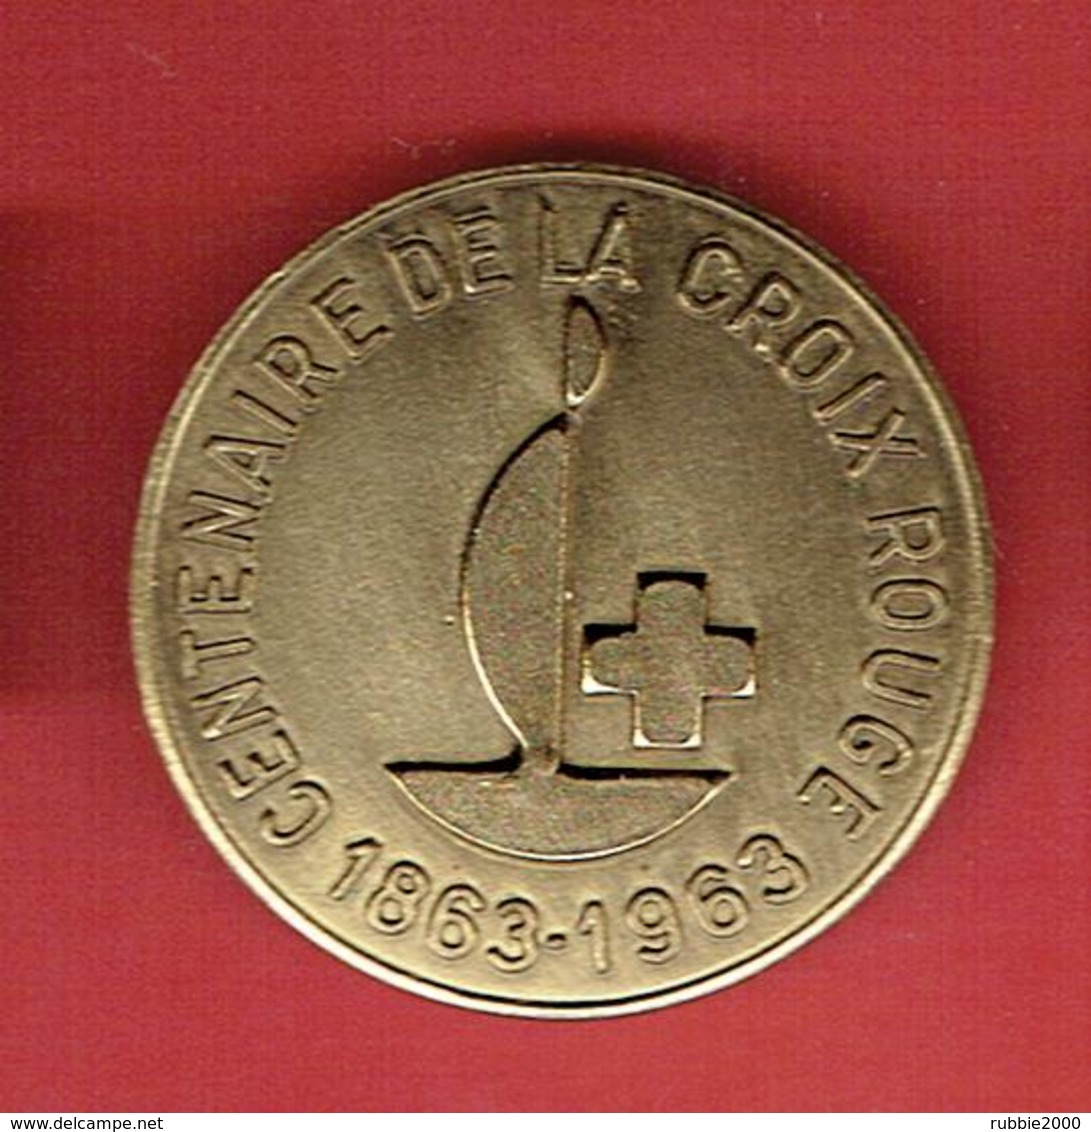 MEDAILLE METAL CENTENAIRE DE LA CROIX ROUGE FRANCAISE 1863 1963 - Services Médicaux